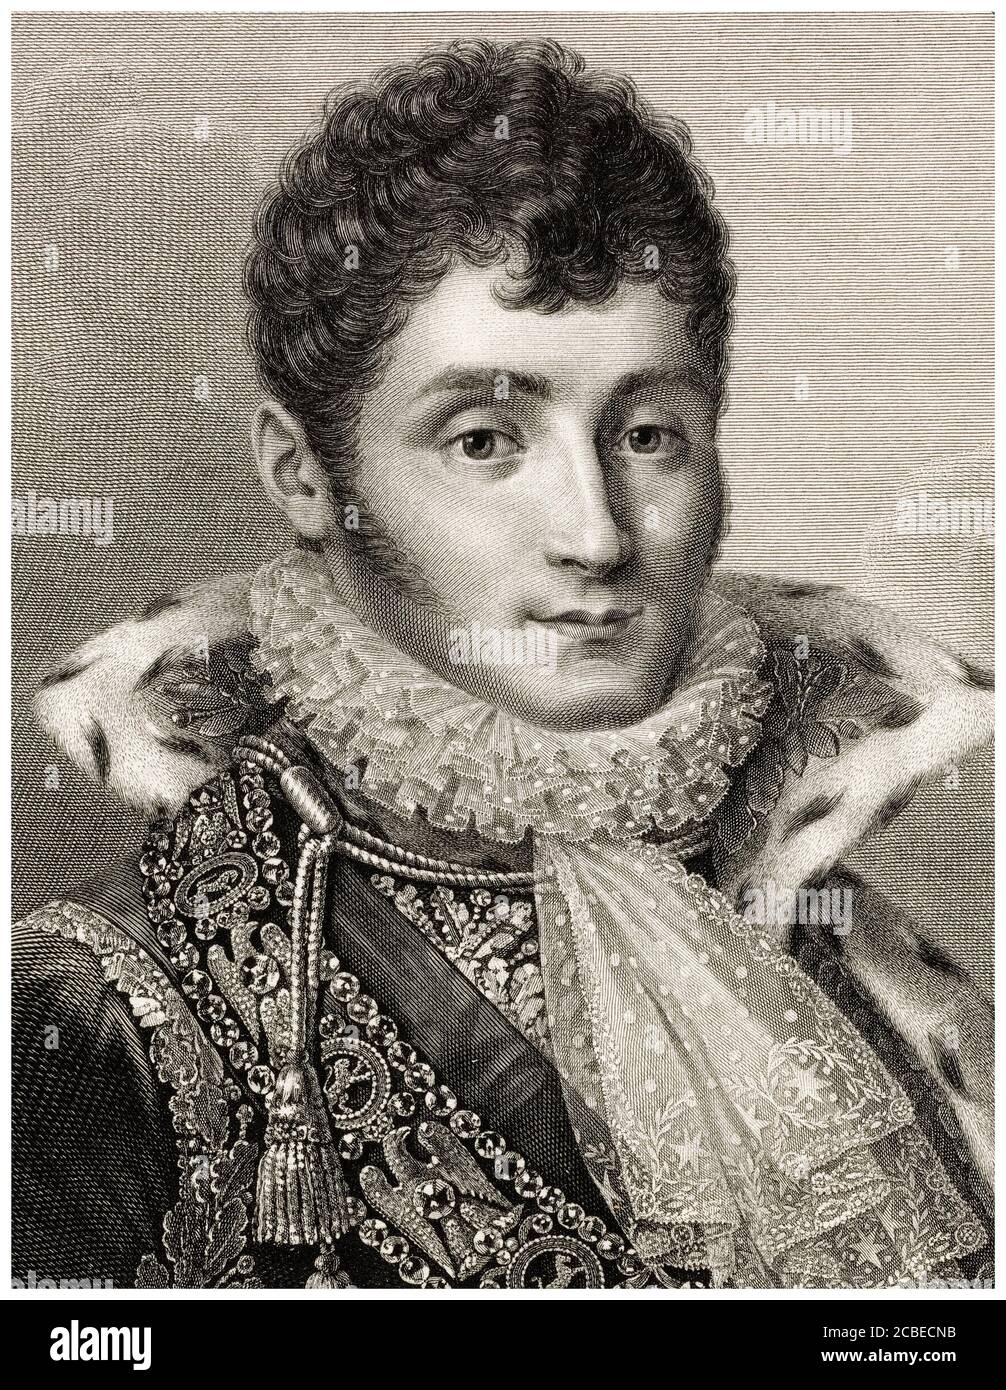 Jérôme-Napoléon Bonaparte (1784-1860), König von Westfalen, französischer Prinz, Kupferstich von Christian-Friedrich Muller und Johann Gotthard von Muller, vor 1816 Stockfoto